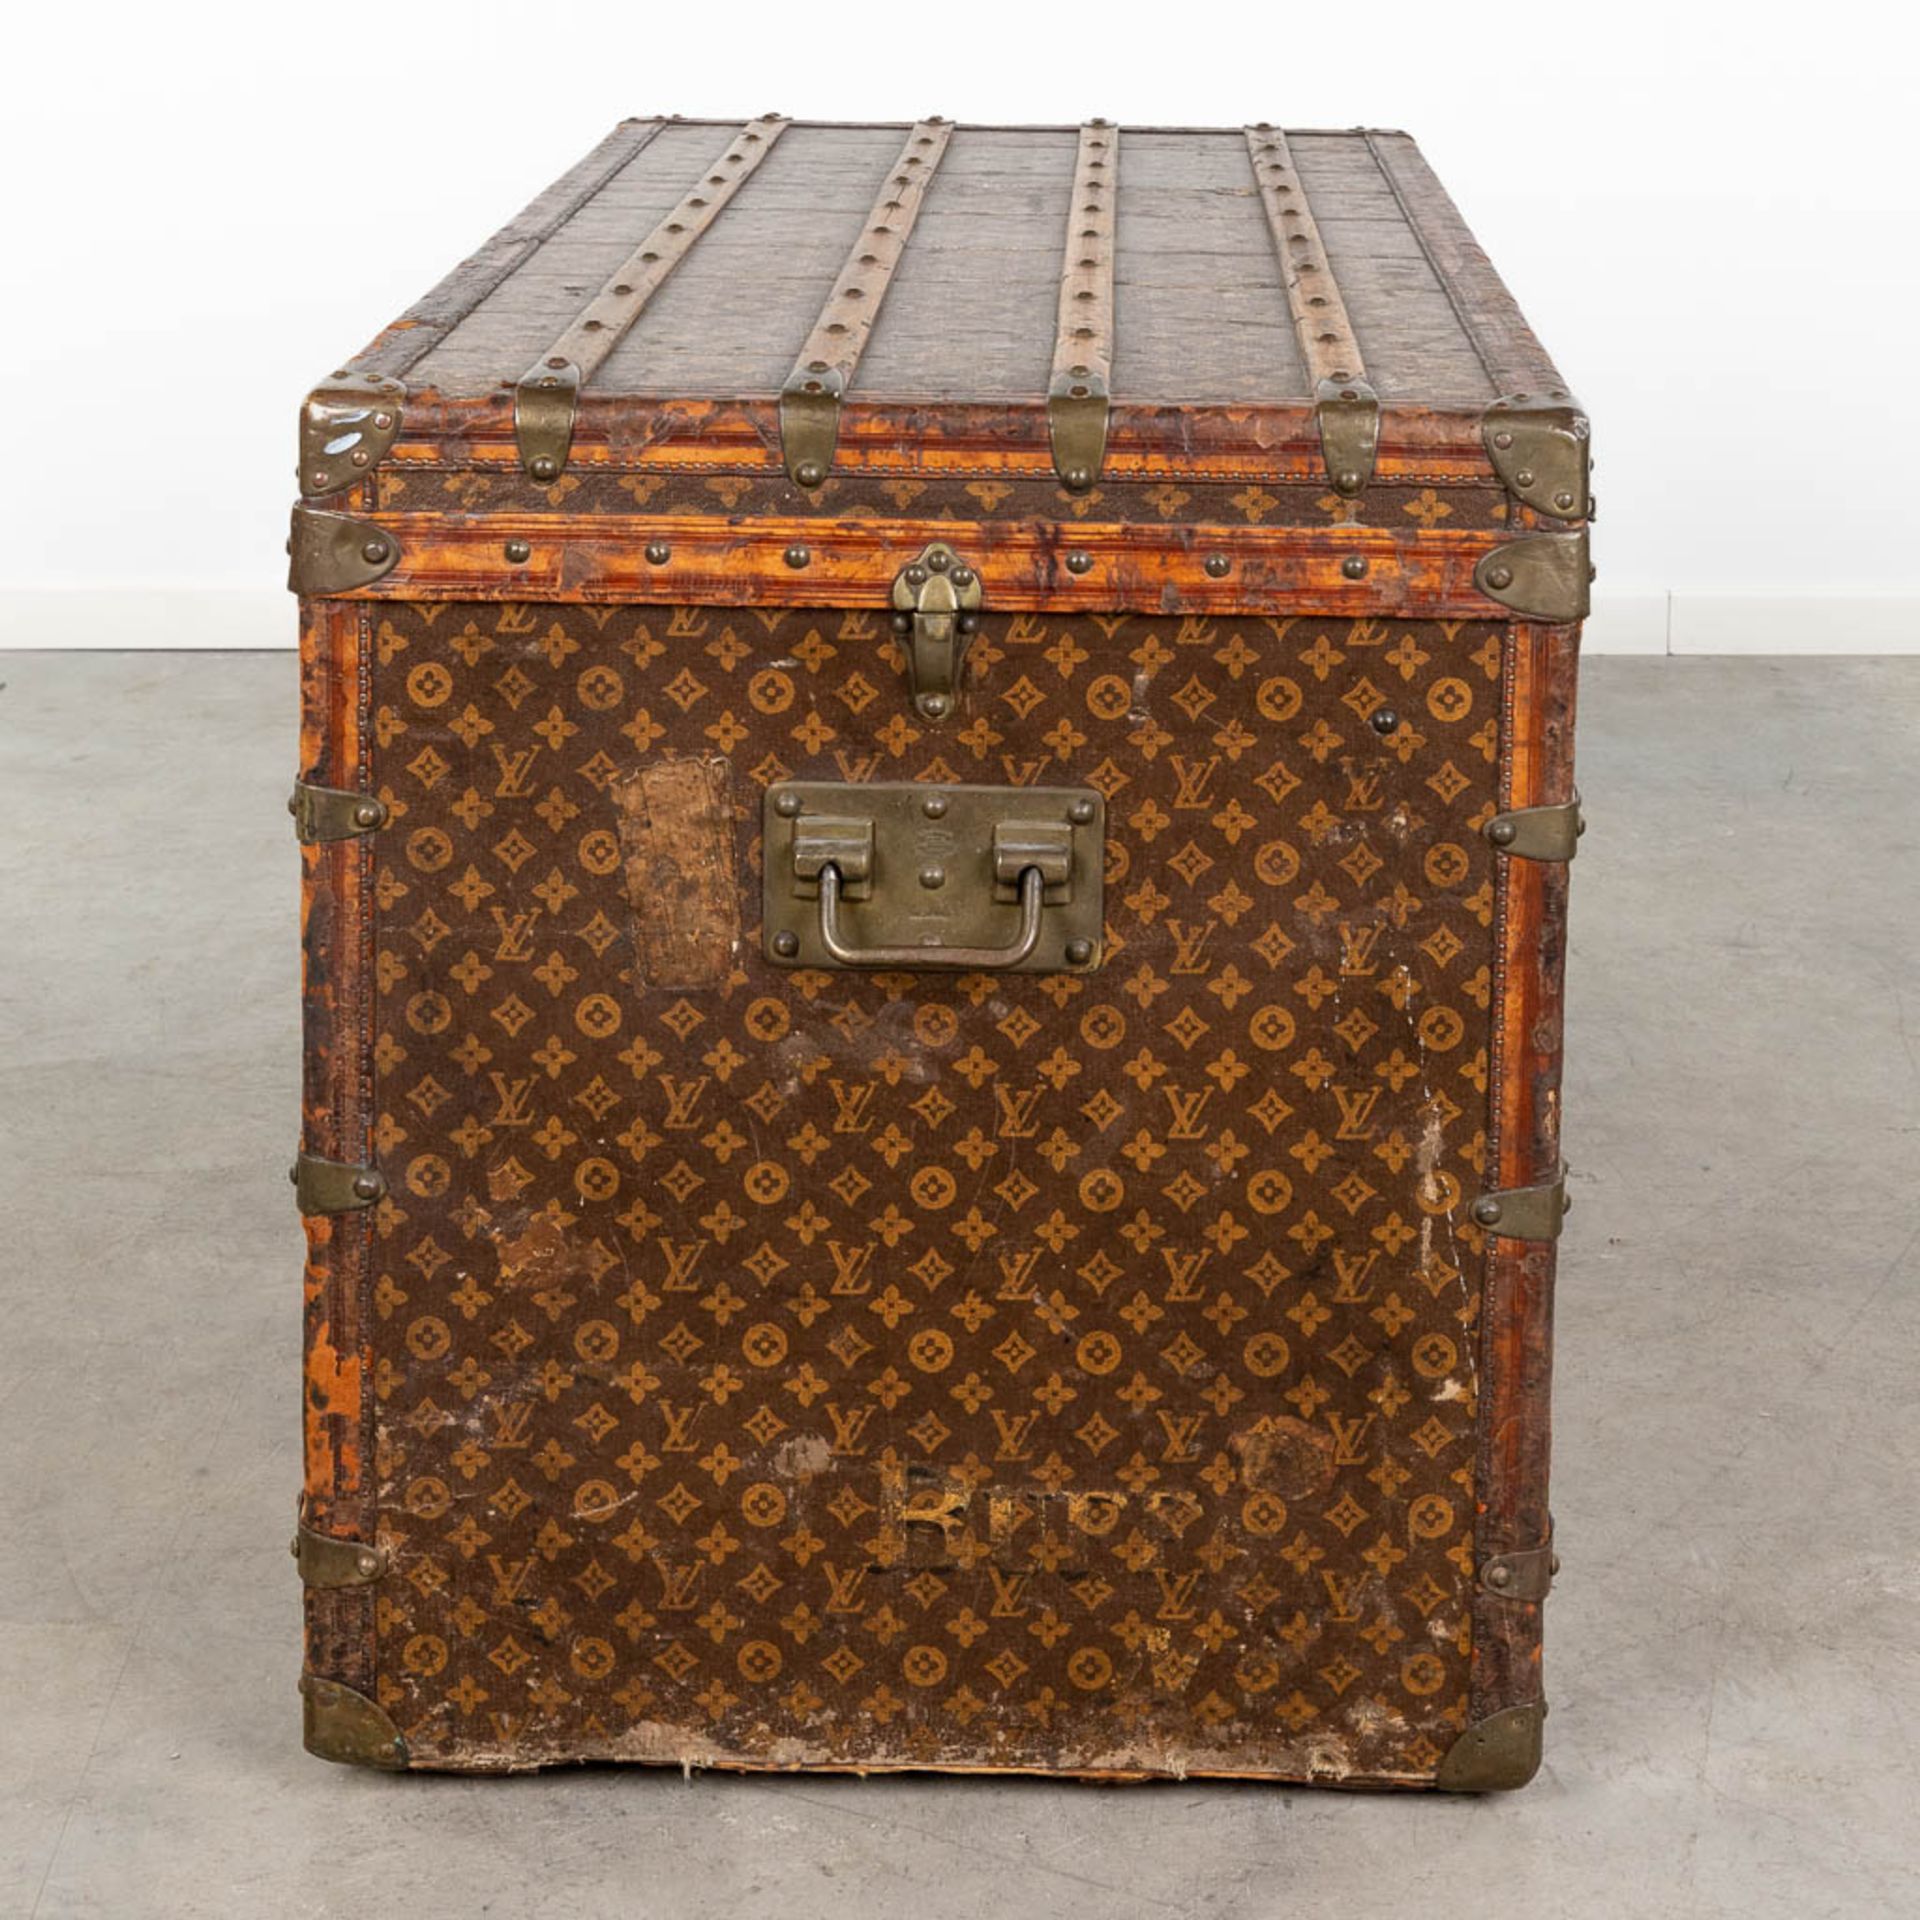 Louis Vuitton, a large and antique suitcase. (L:63 x W:113 x H:72 cm) - Bild 7 aus 25